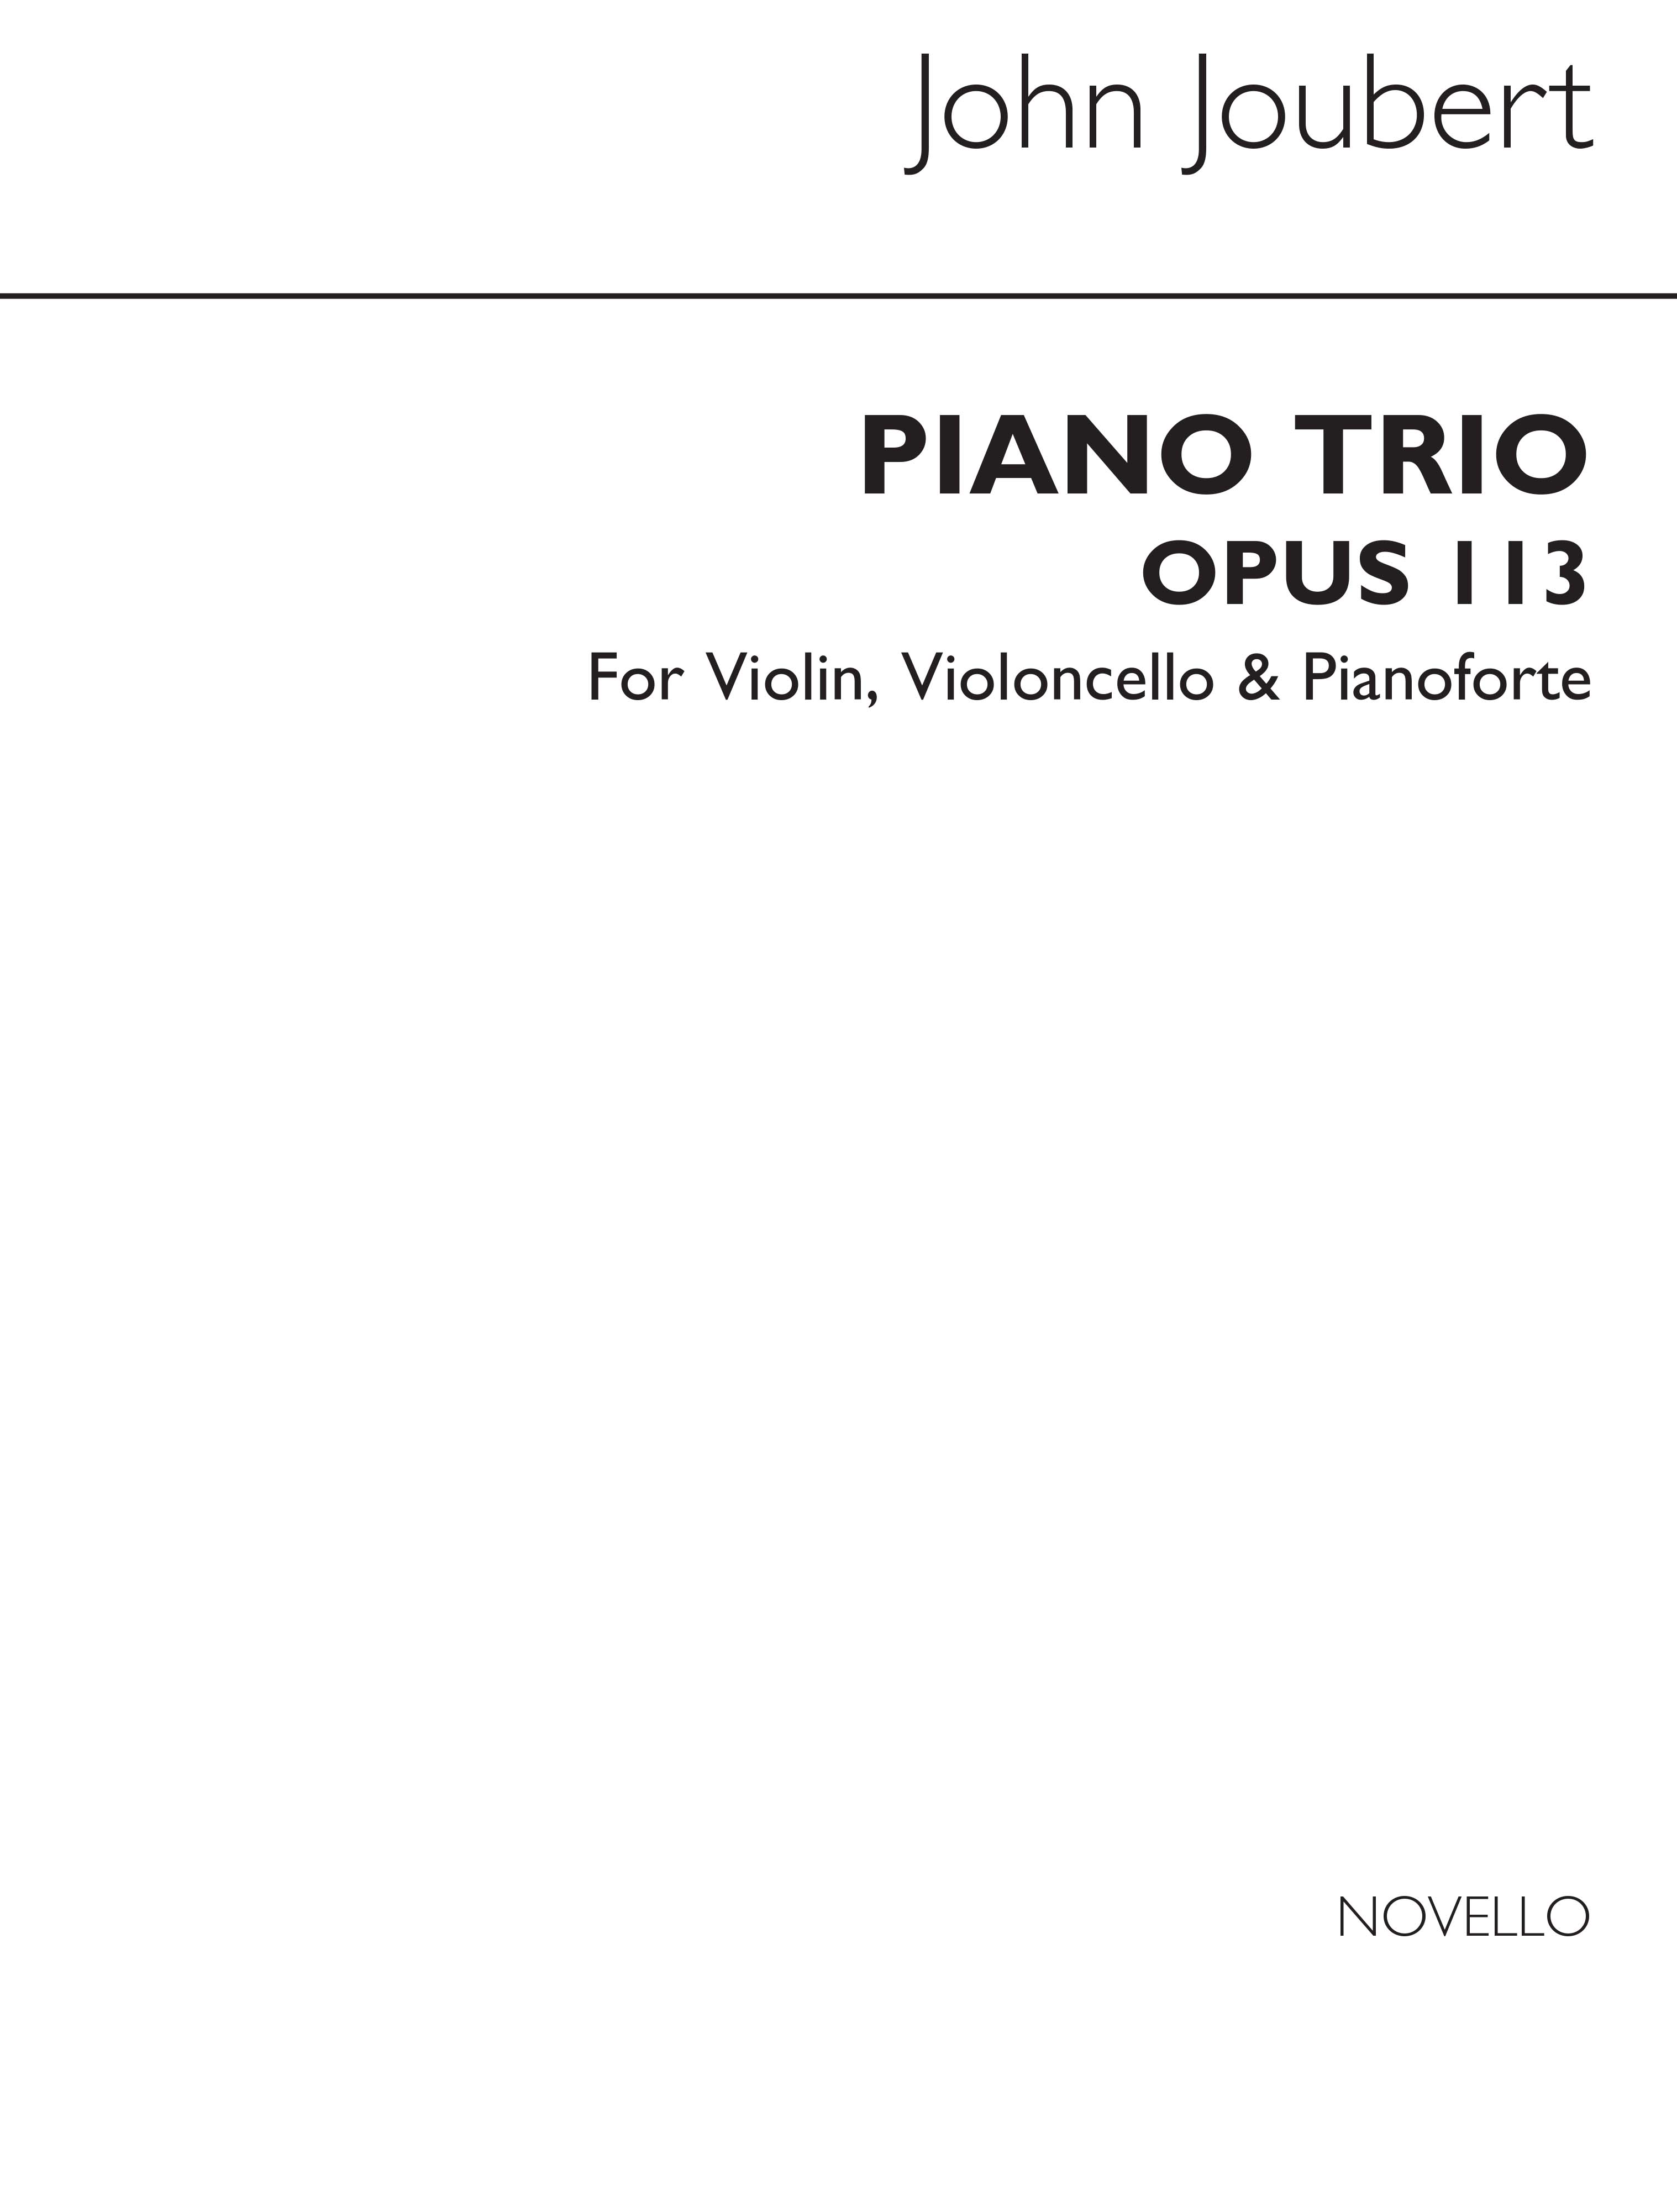 John Joubert: Piano Trio Op.113